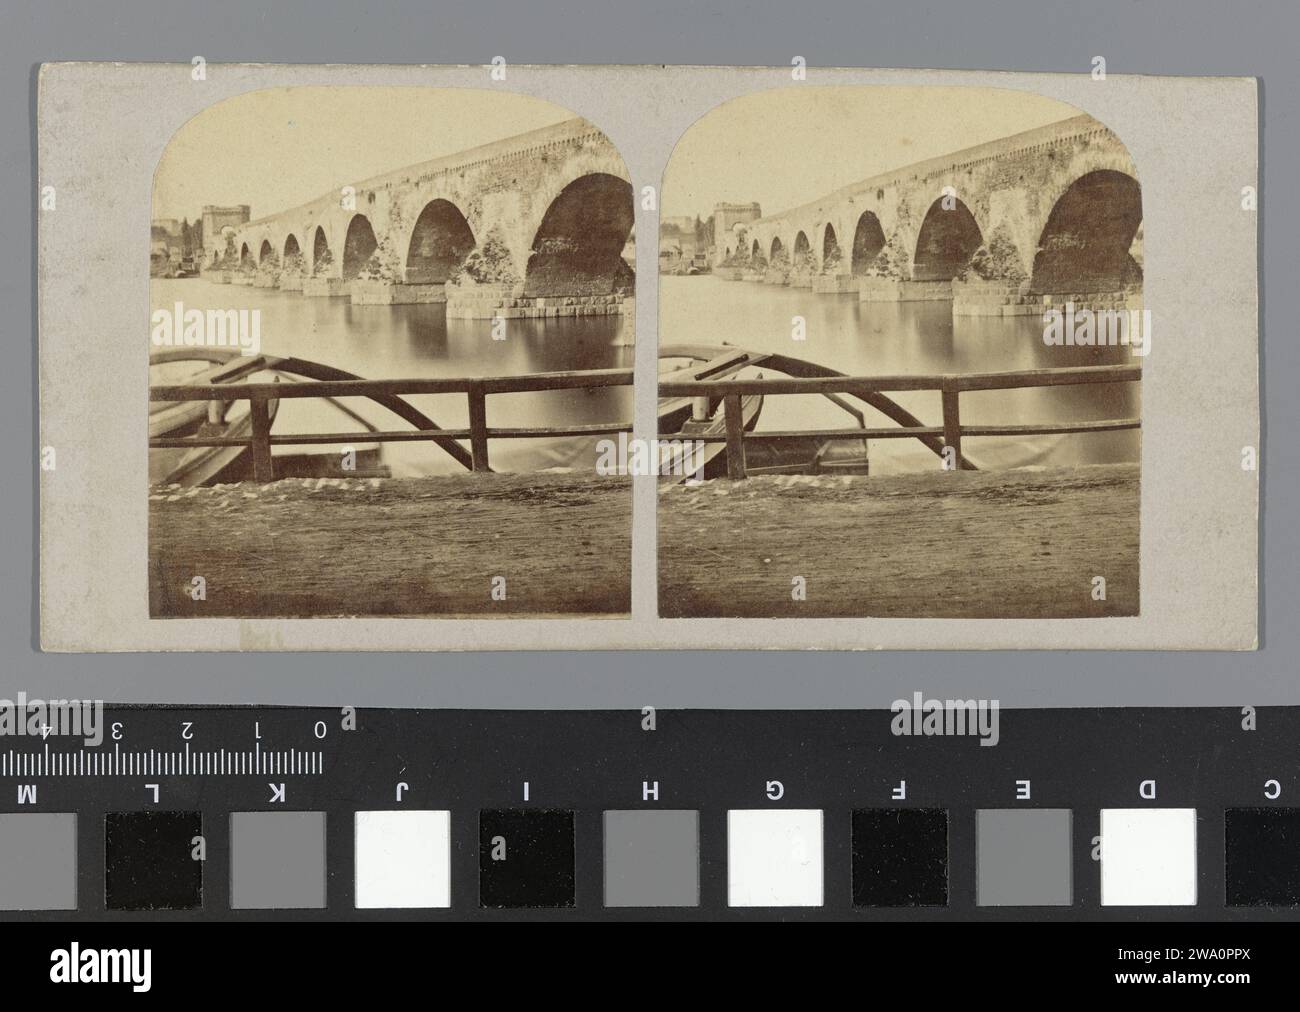 Blick auf die Balduinbrücke über die Moesel bei Koblenz, anonym, um 1855 - um 1865 Koblenzer Papier. Brücke mit Albumendruck aus Karton. Landschaft mit Brücke, Viadukt oder Aquädukt Koblenz. Balduin-Brücke Stockfoto